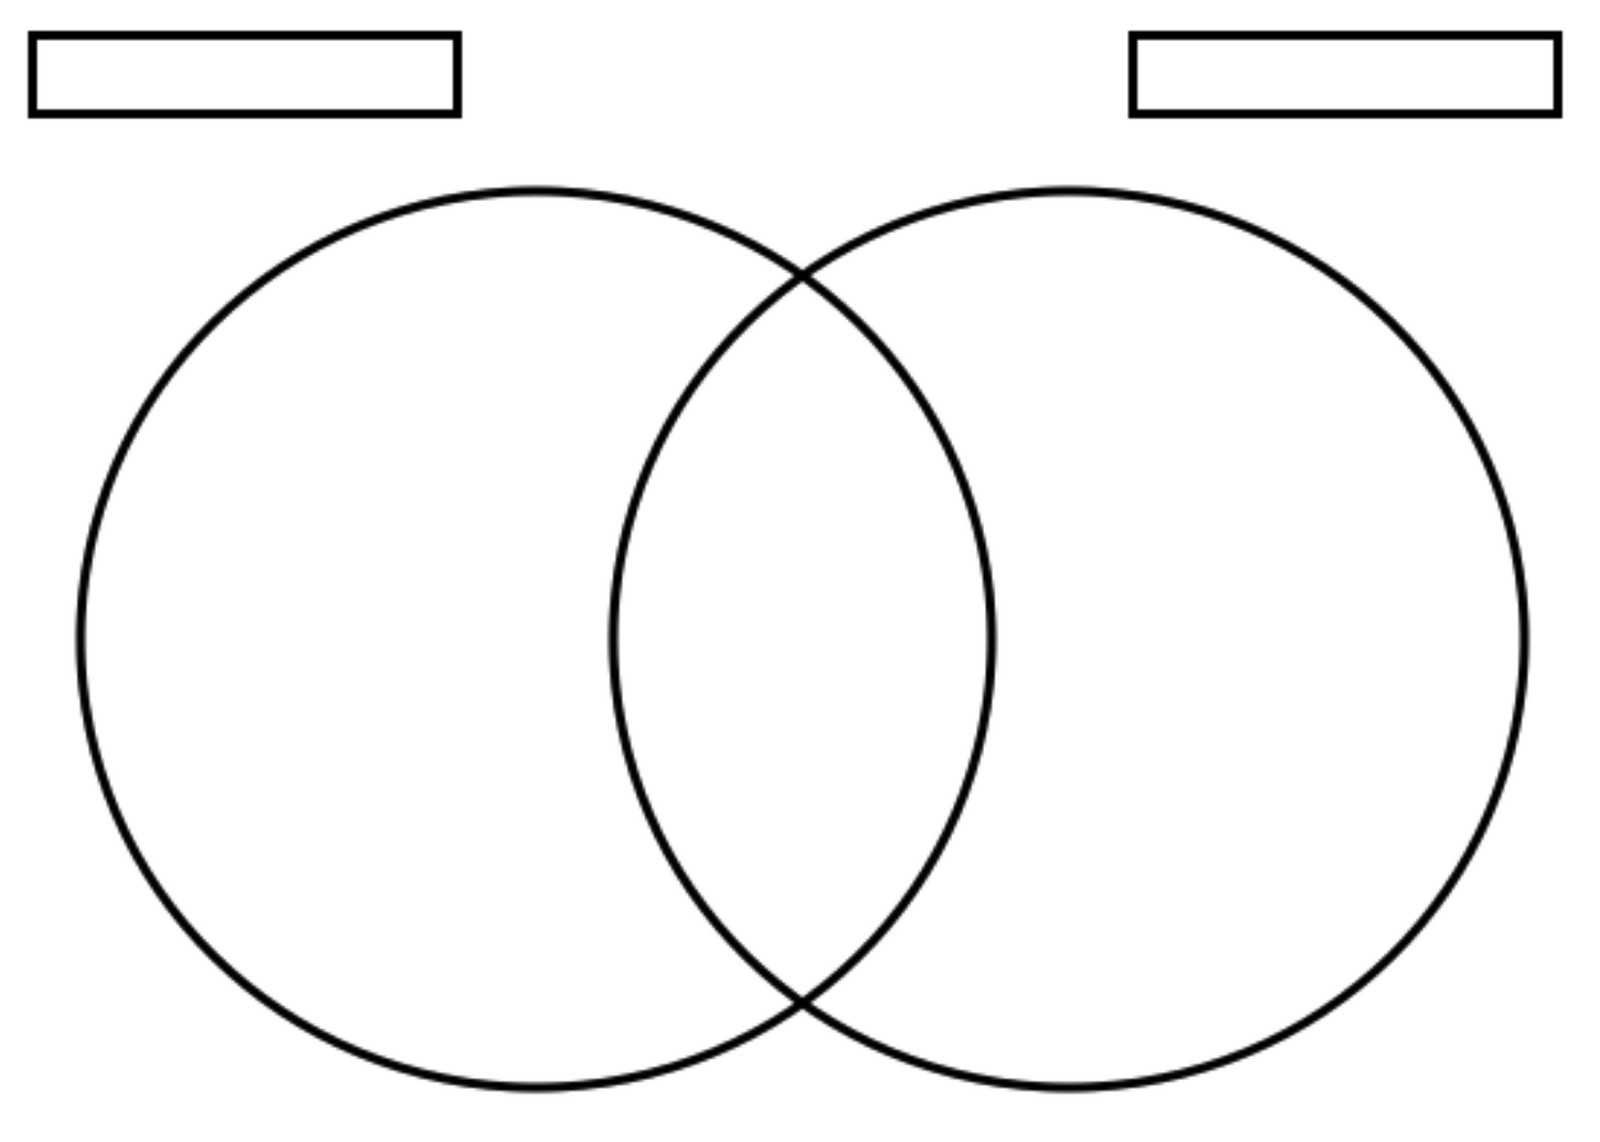 Creating a Venn diagram template